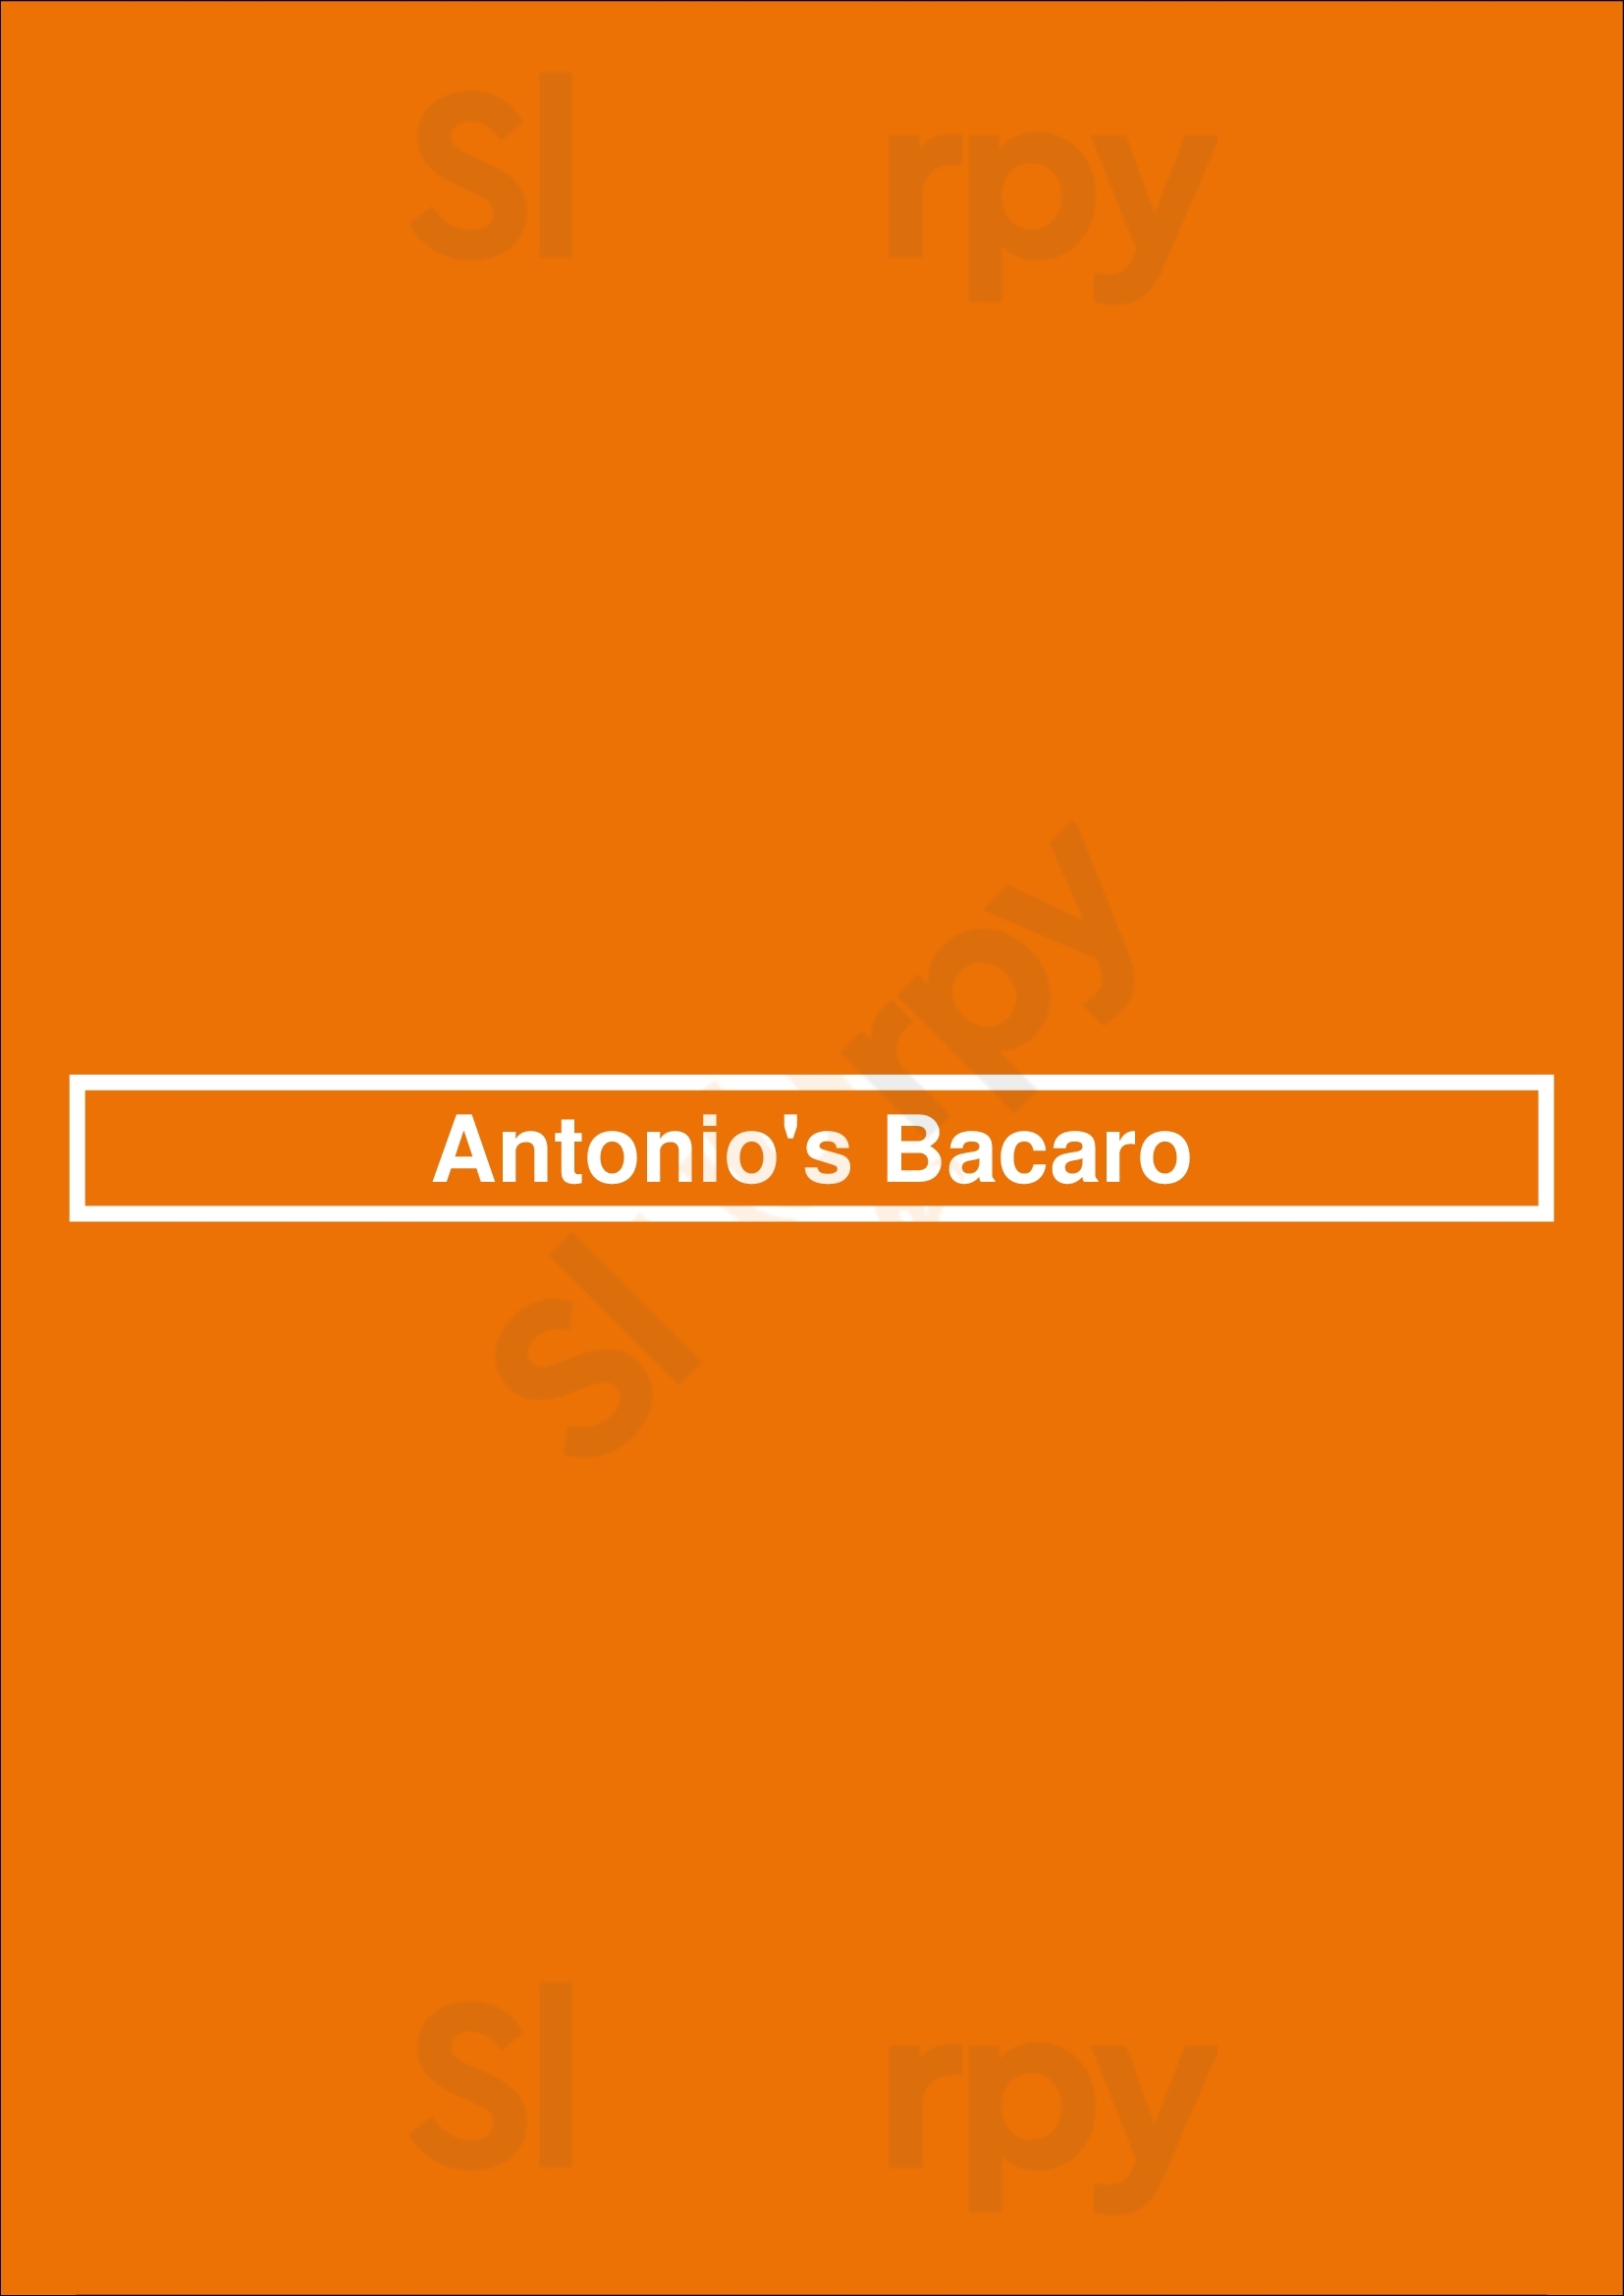 Antonio's Bacaro Boston Menu - 1